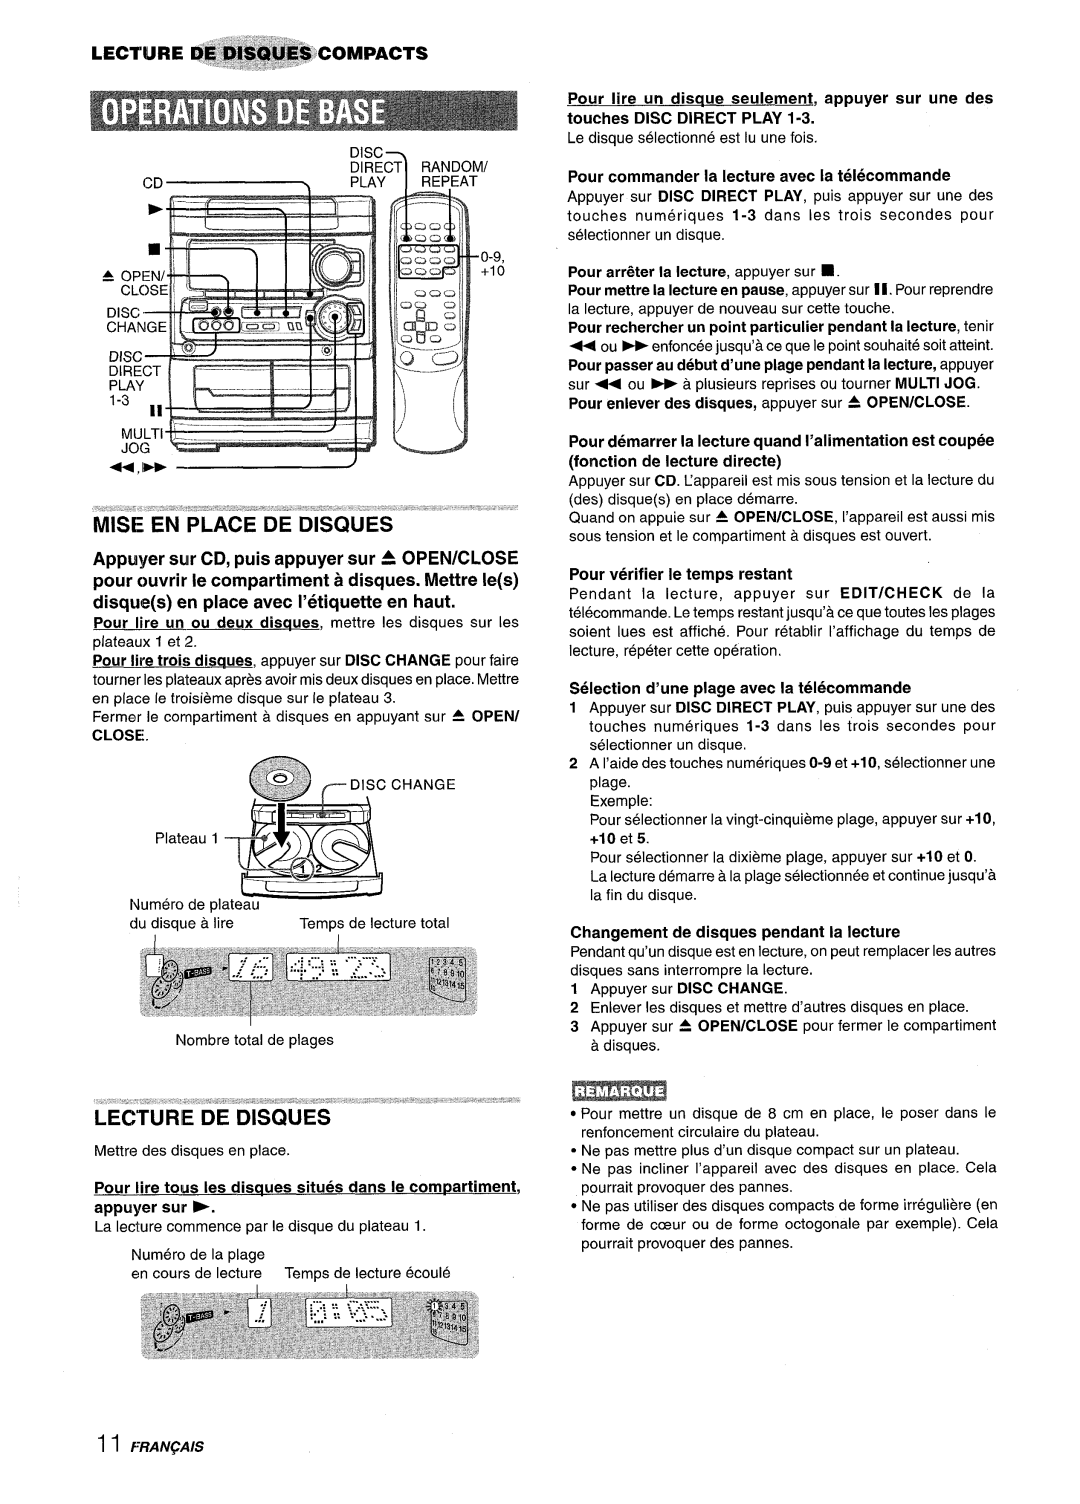 Sony NSX-MT320, SX-MT321 manual Pour tire tows Ies disaues situes clans Ie compartment, appuyer sur, Close 